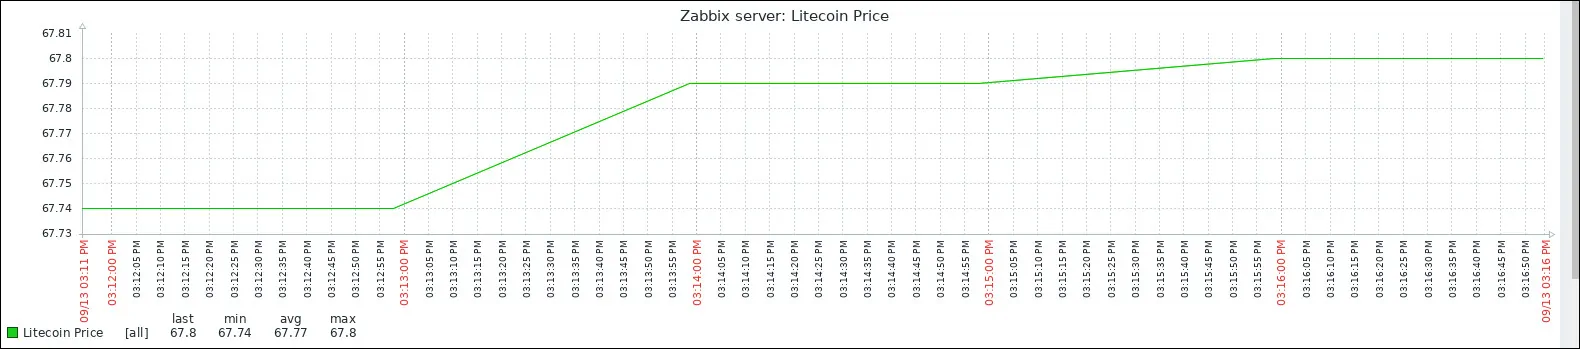 Zabbix litecoin price monitor graph